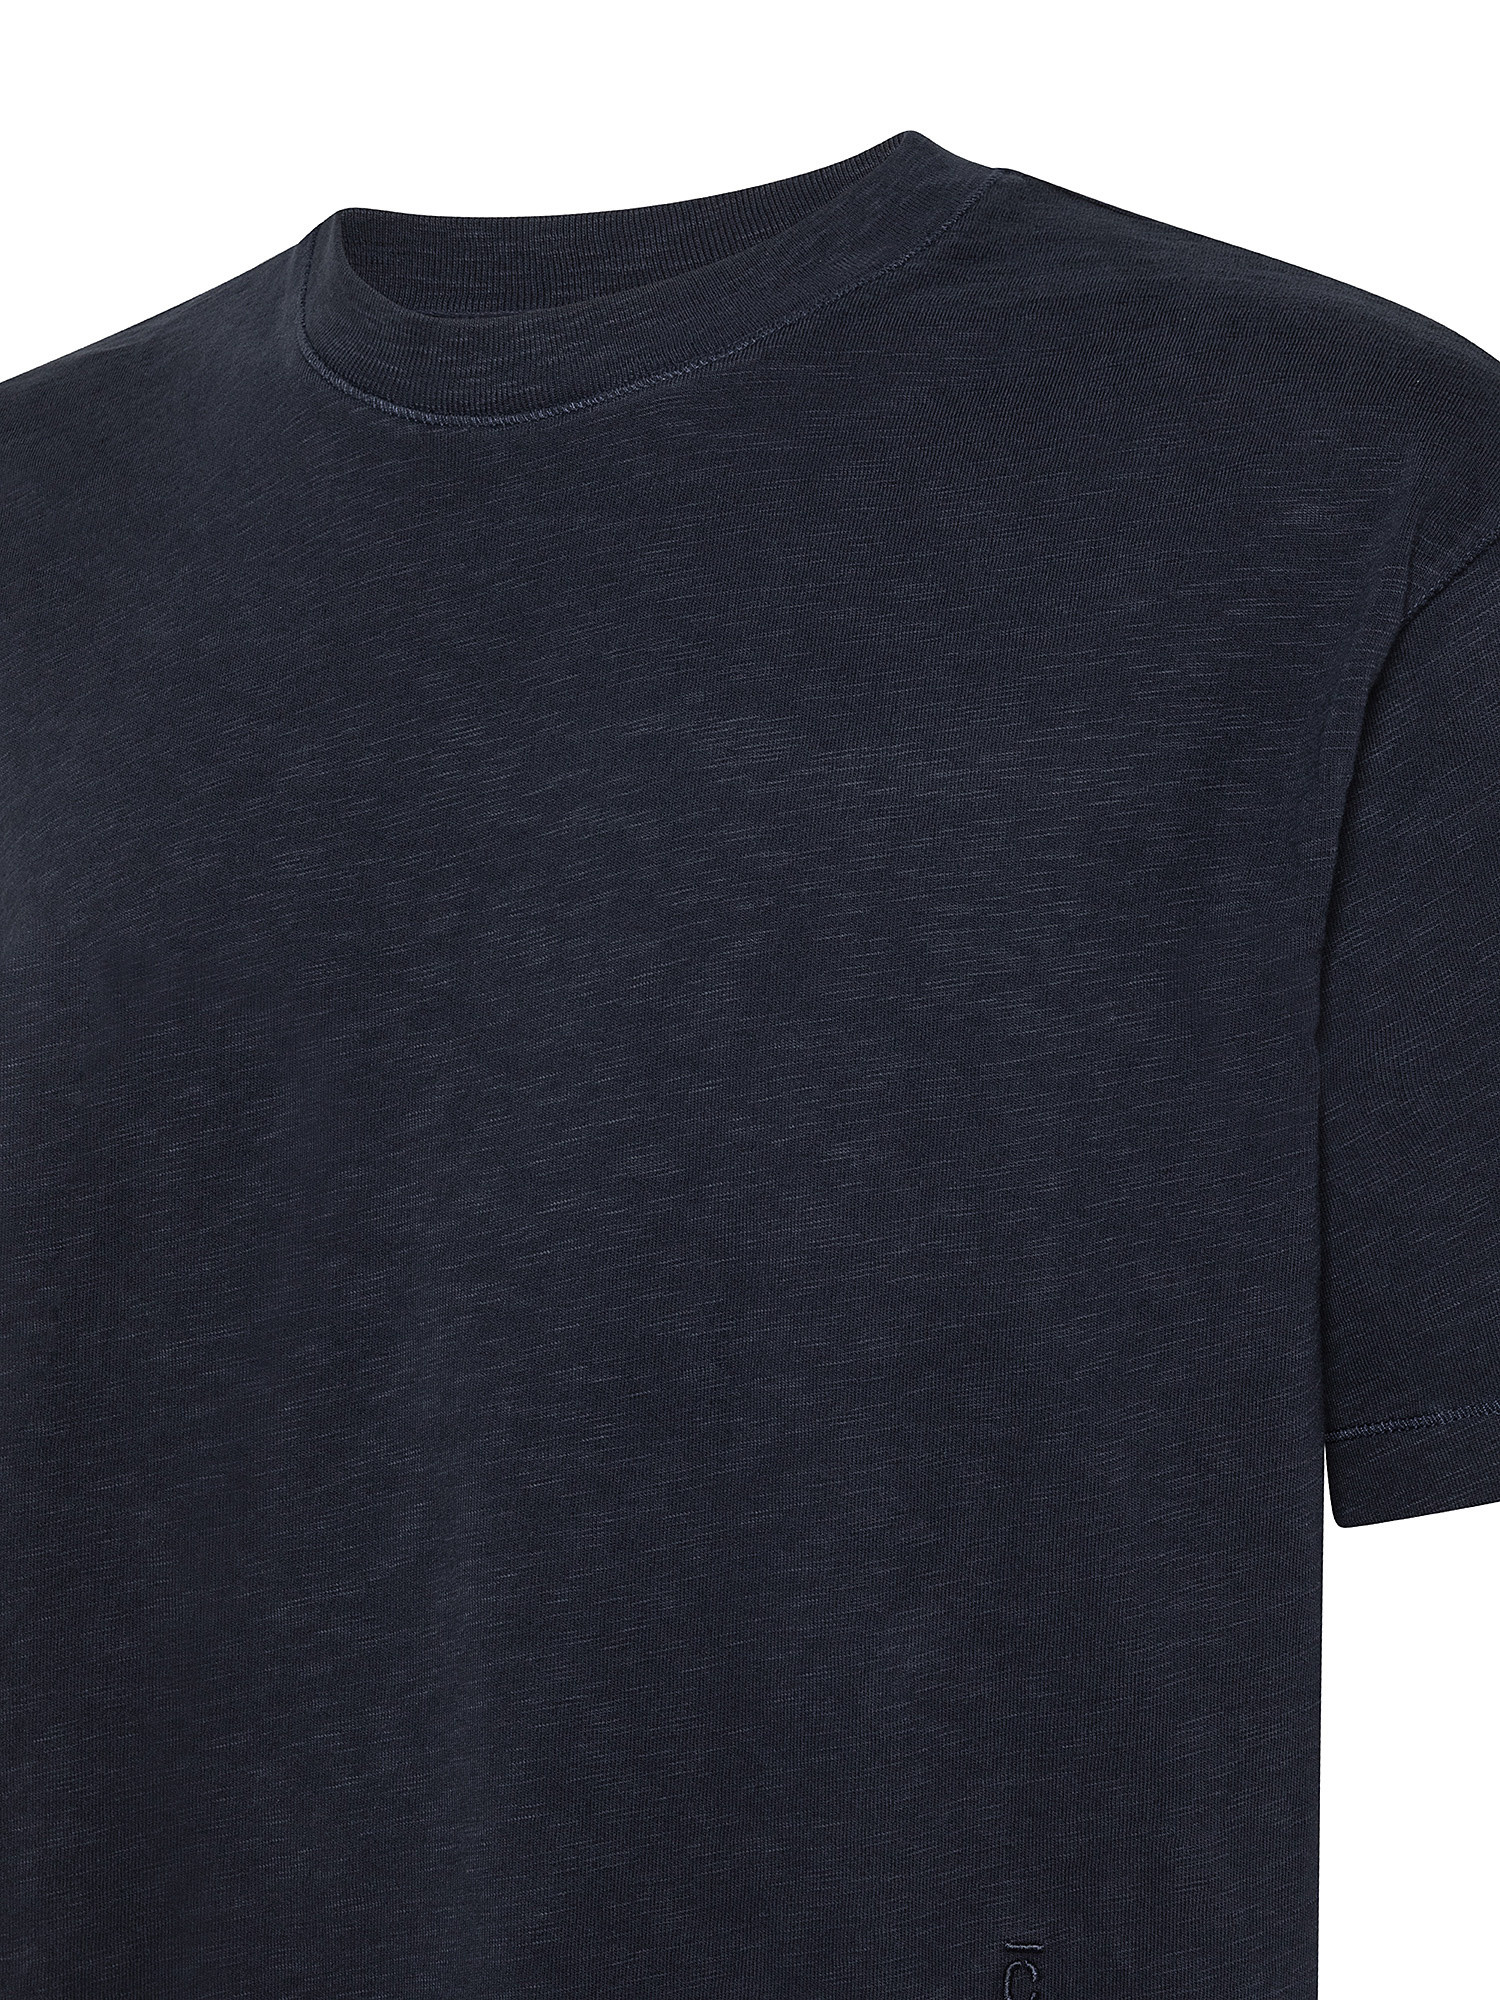 Soft T-Shirt, Dark Blue, large image number 2